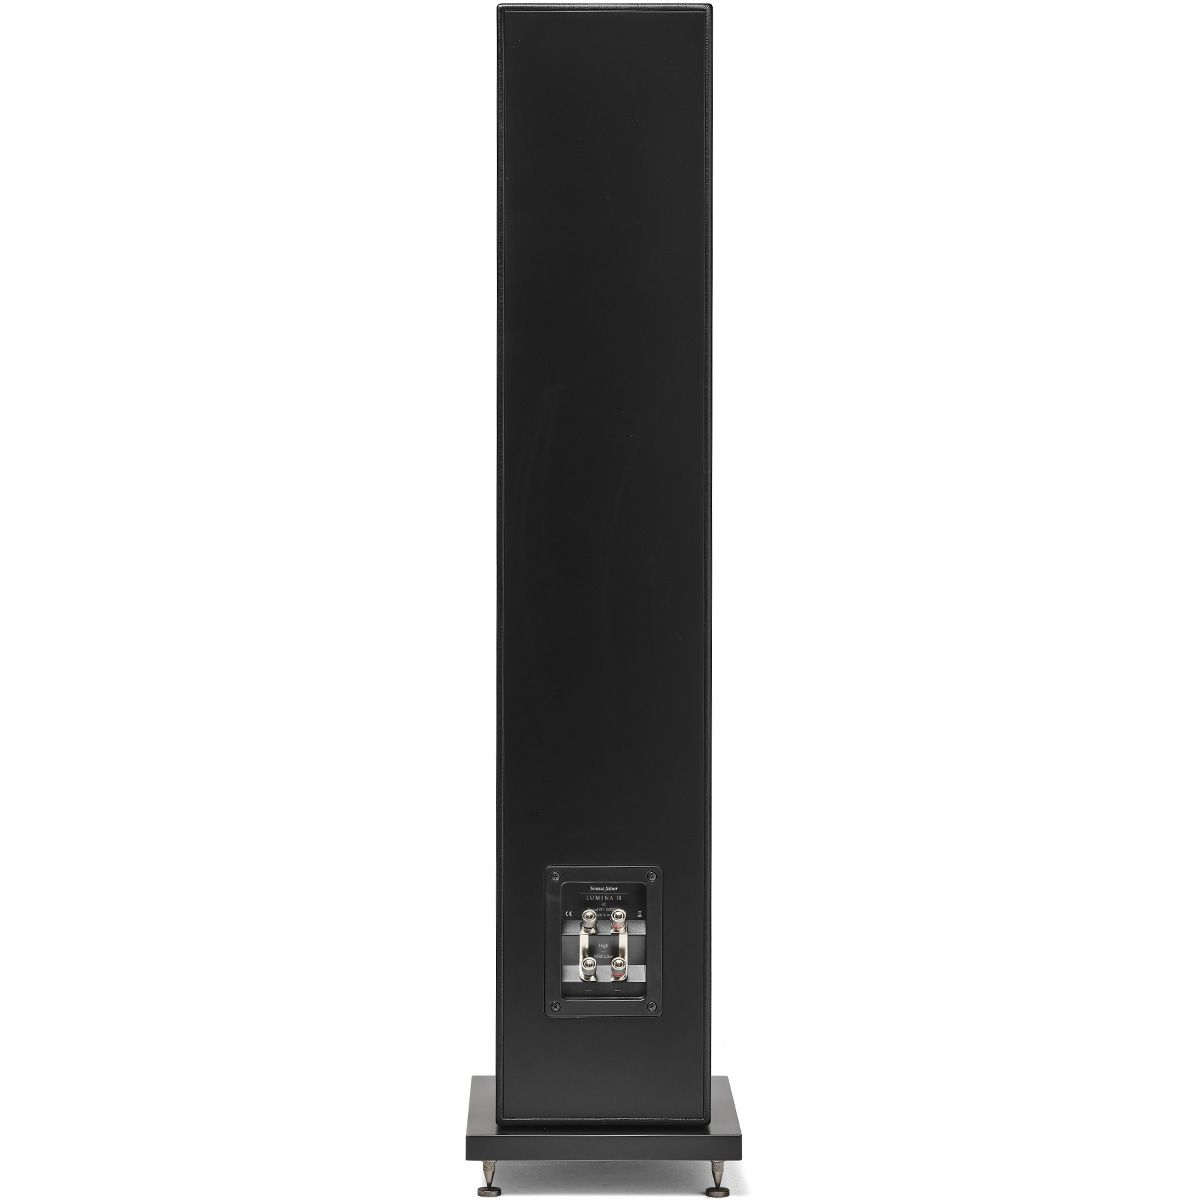 Sonus Faber Lumina III Floorstanding Speaker - Black - Each - rear view